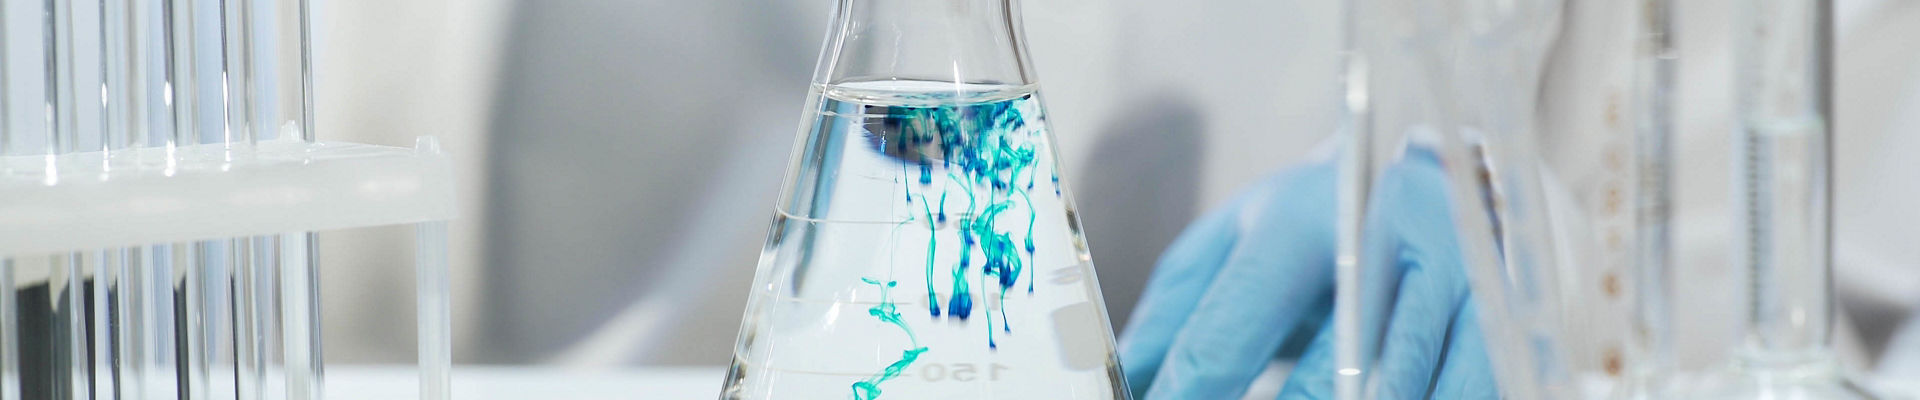 化学师将蓝色物质倒入锥形烧瓶中